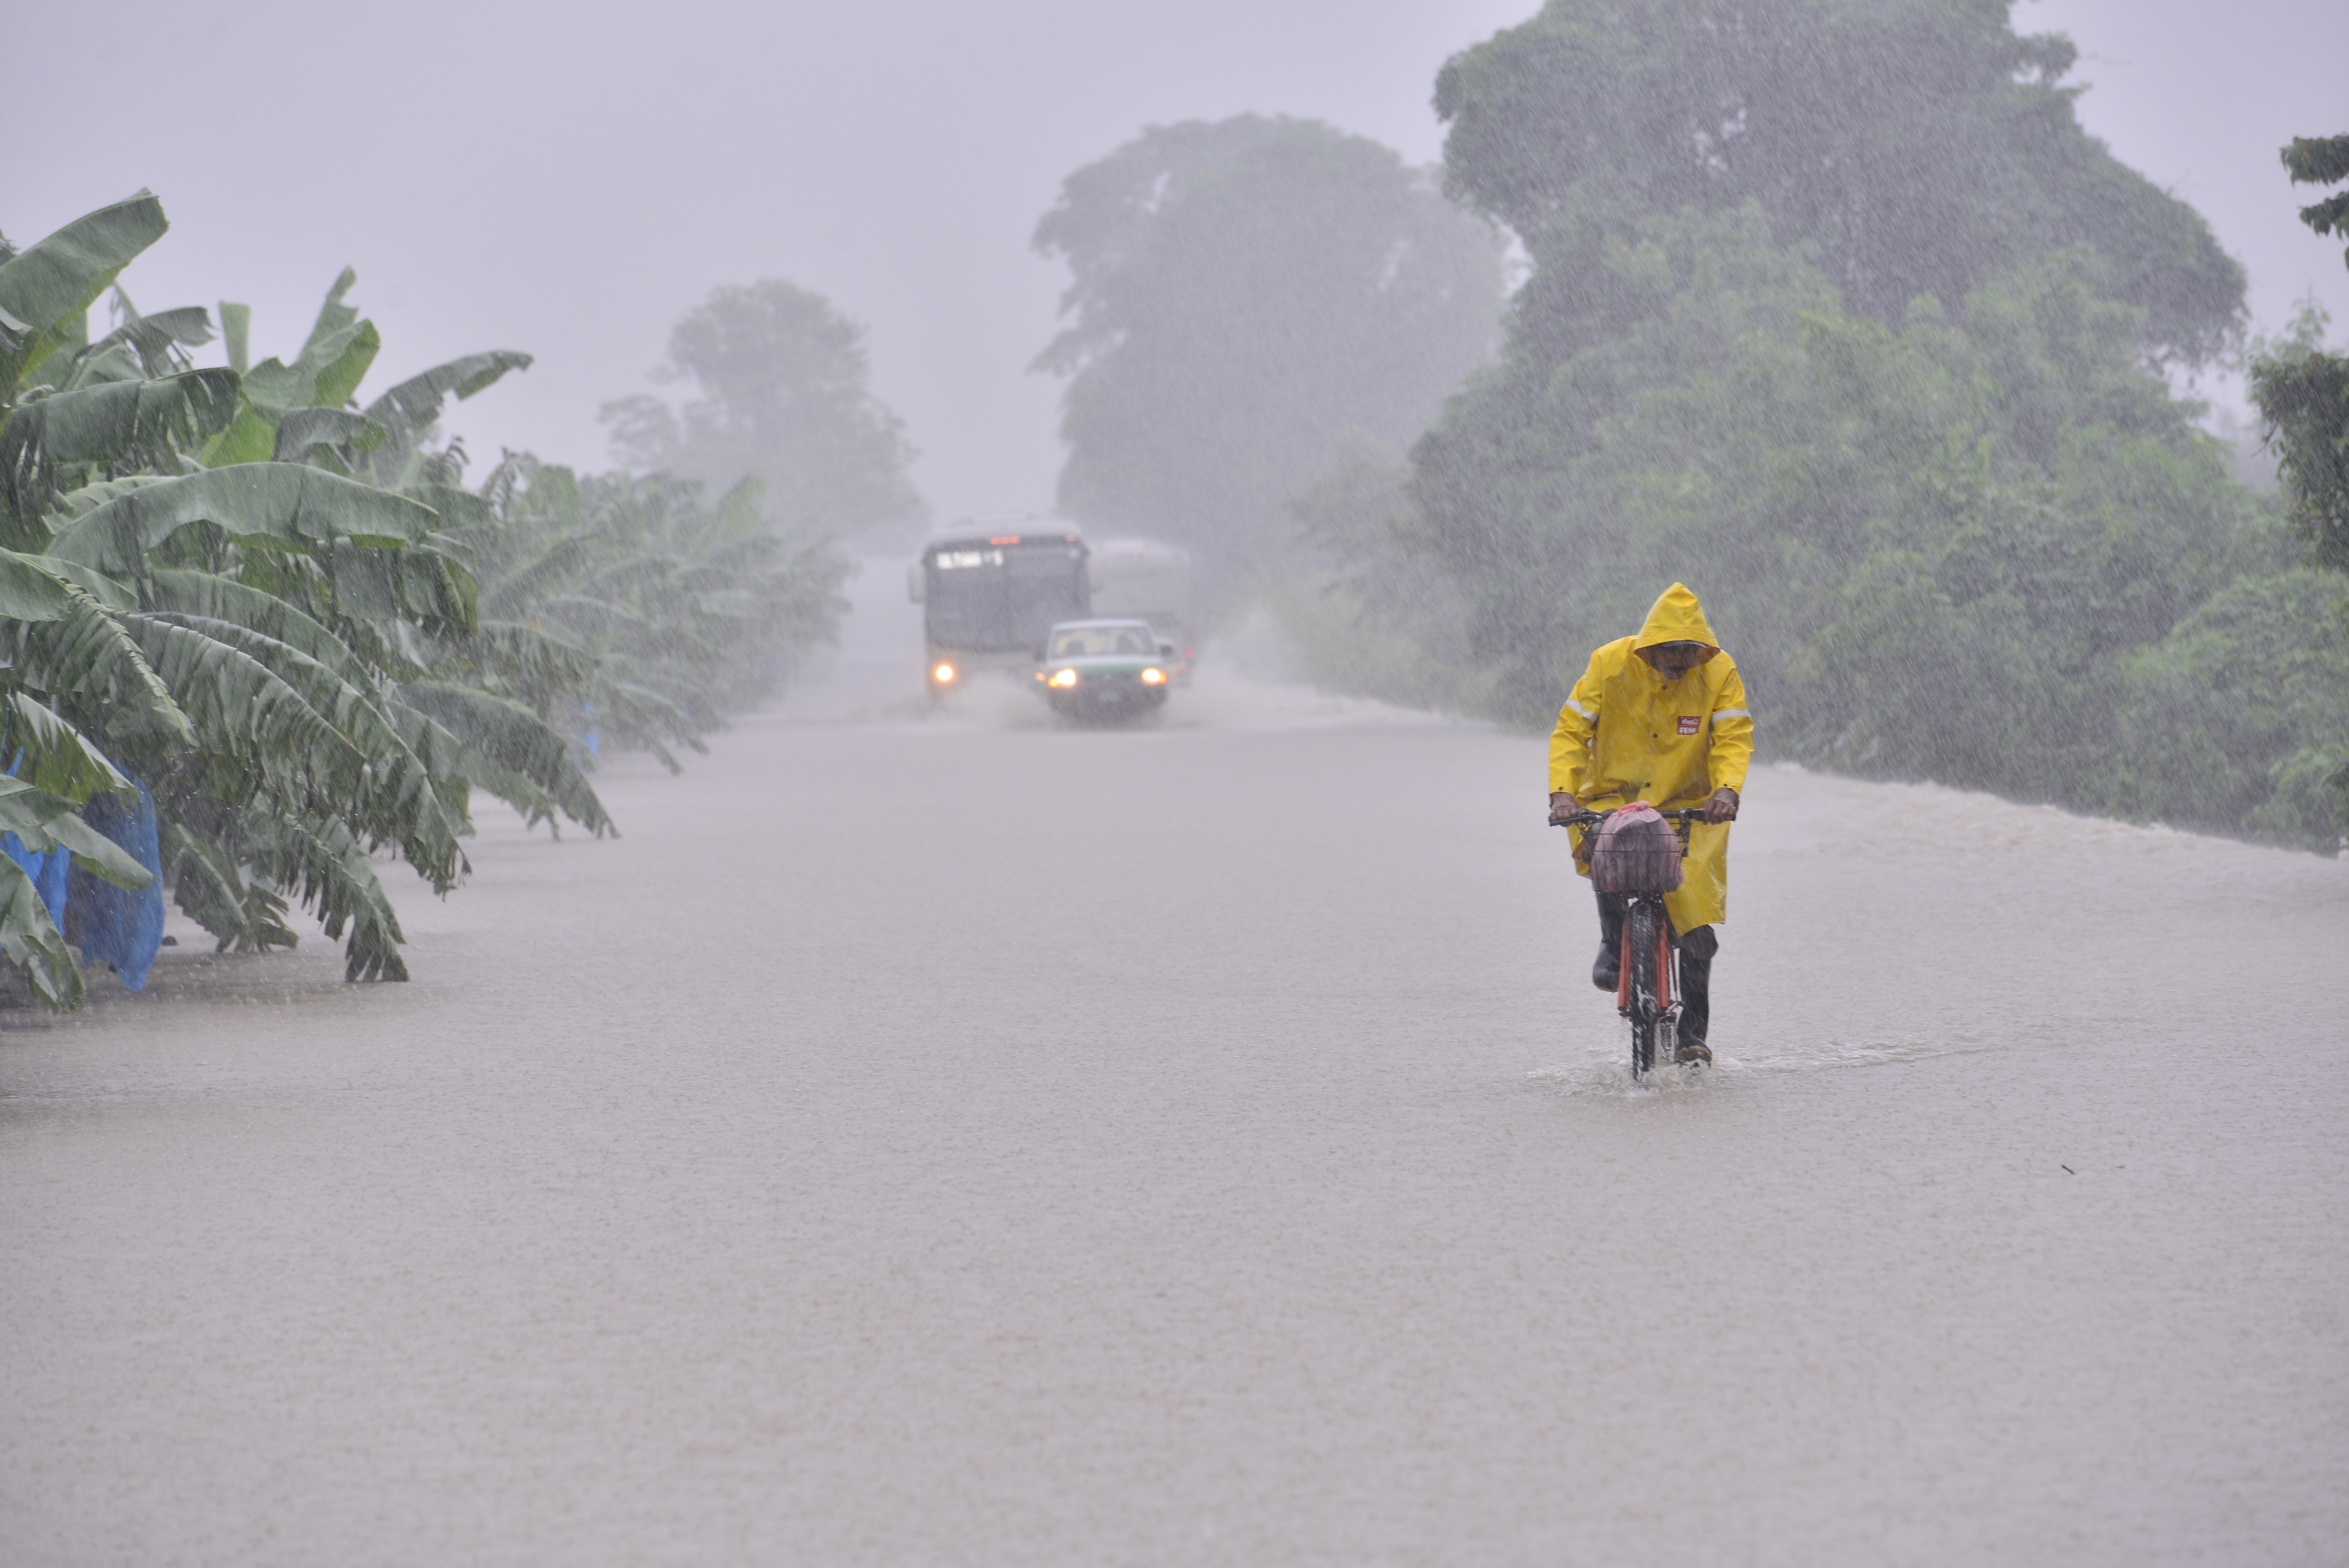  Prevén lluvias intensas en Chiapas, Oaxaca, Veracruz y Tabasco